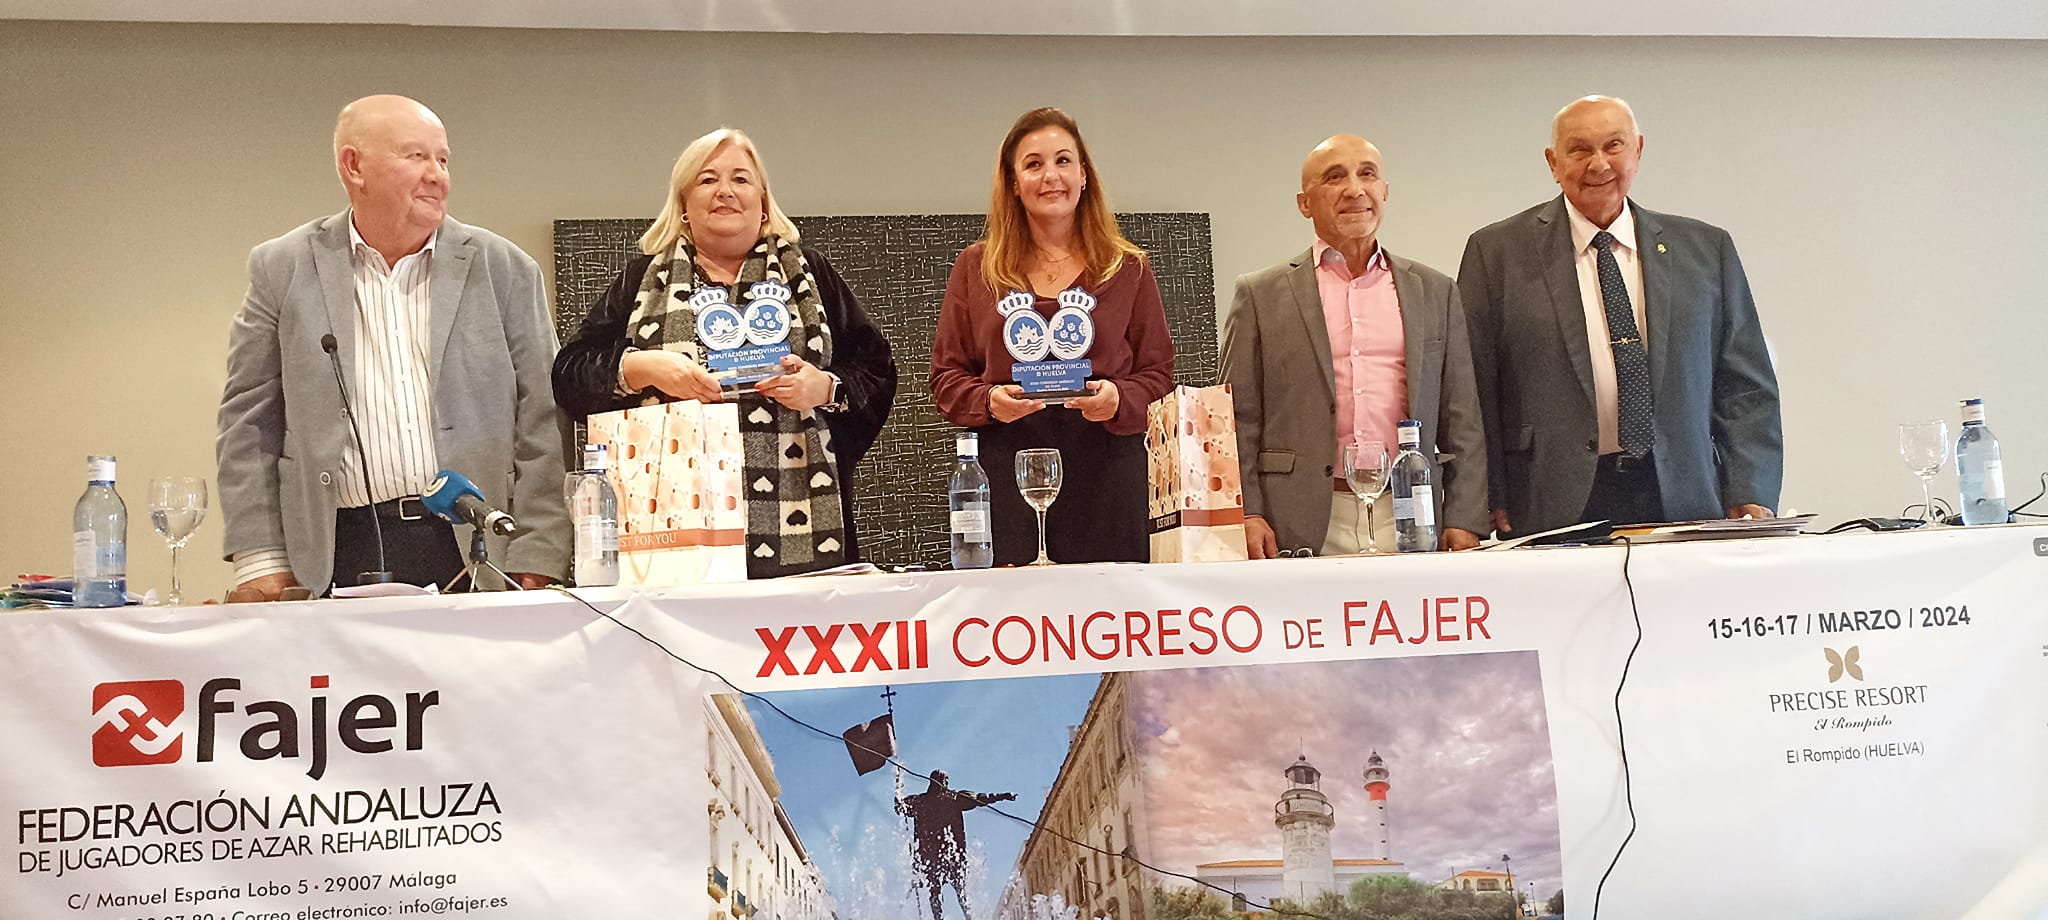 32 Congreso de FAJER en Huelva